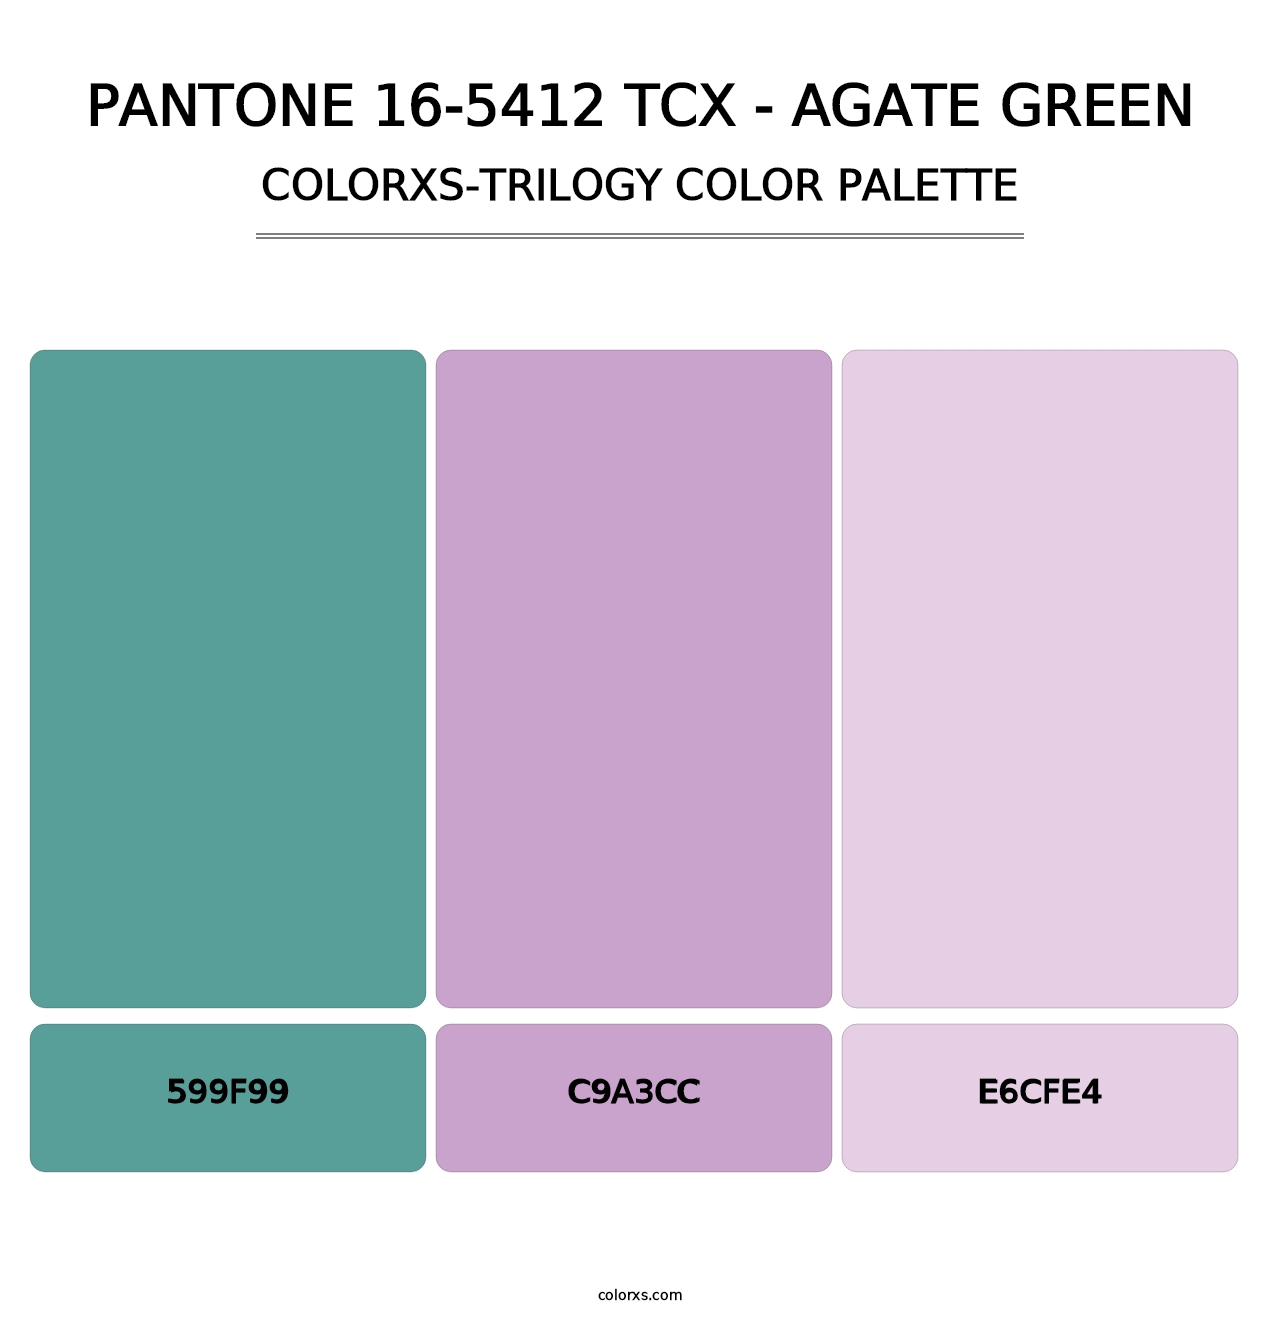 PANTONE 16-5412 TCX - Agate Green - Colorxs Trilogy Palette